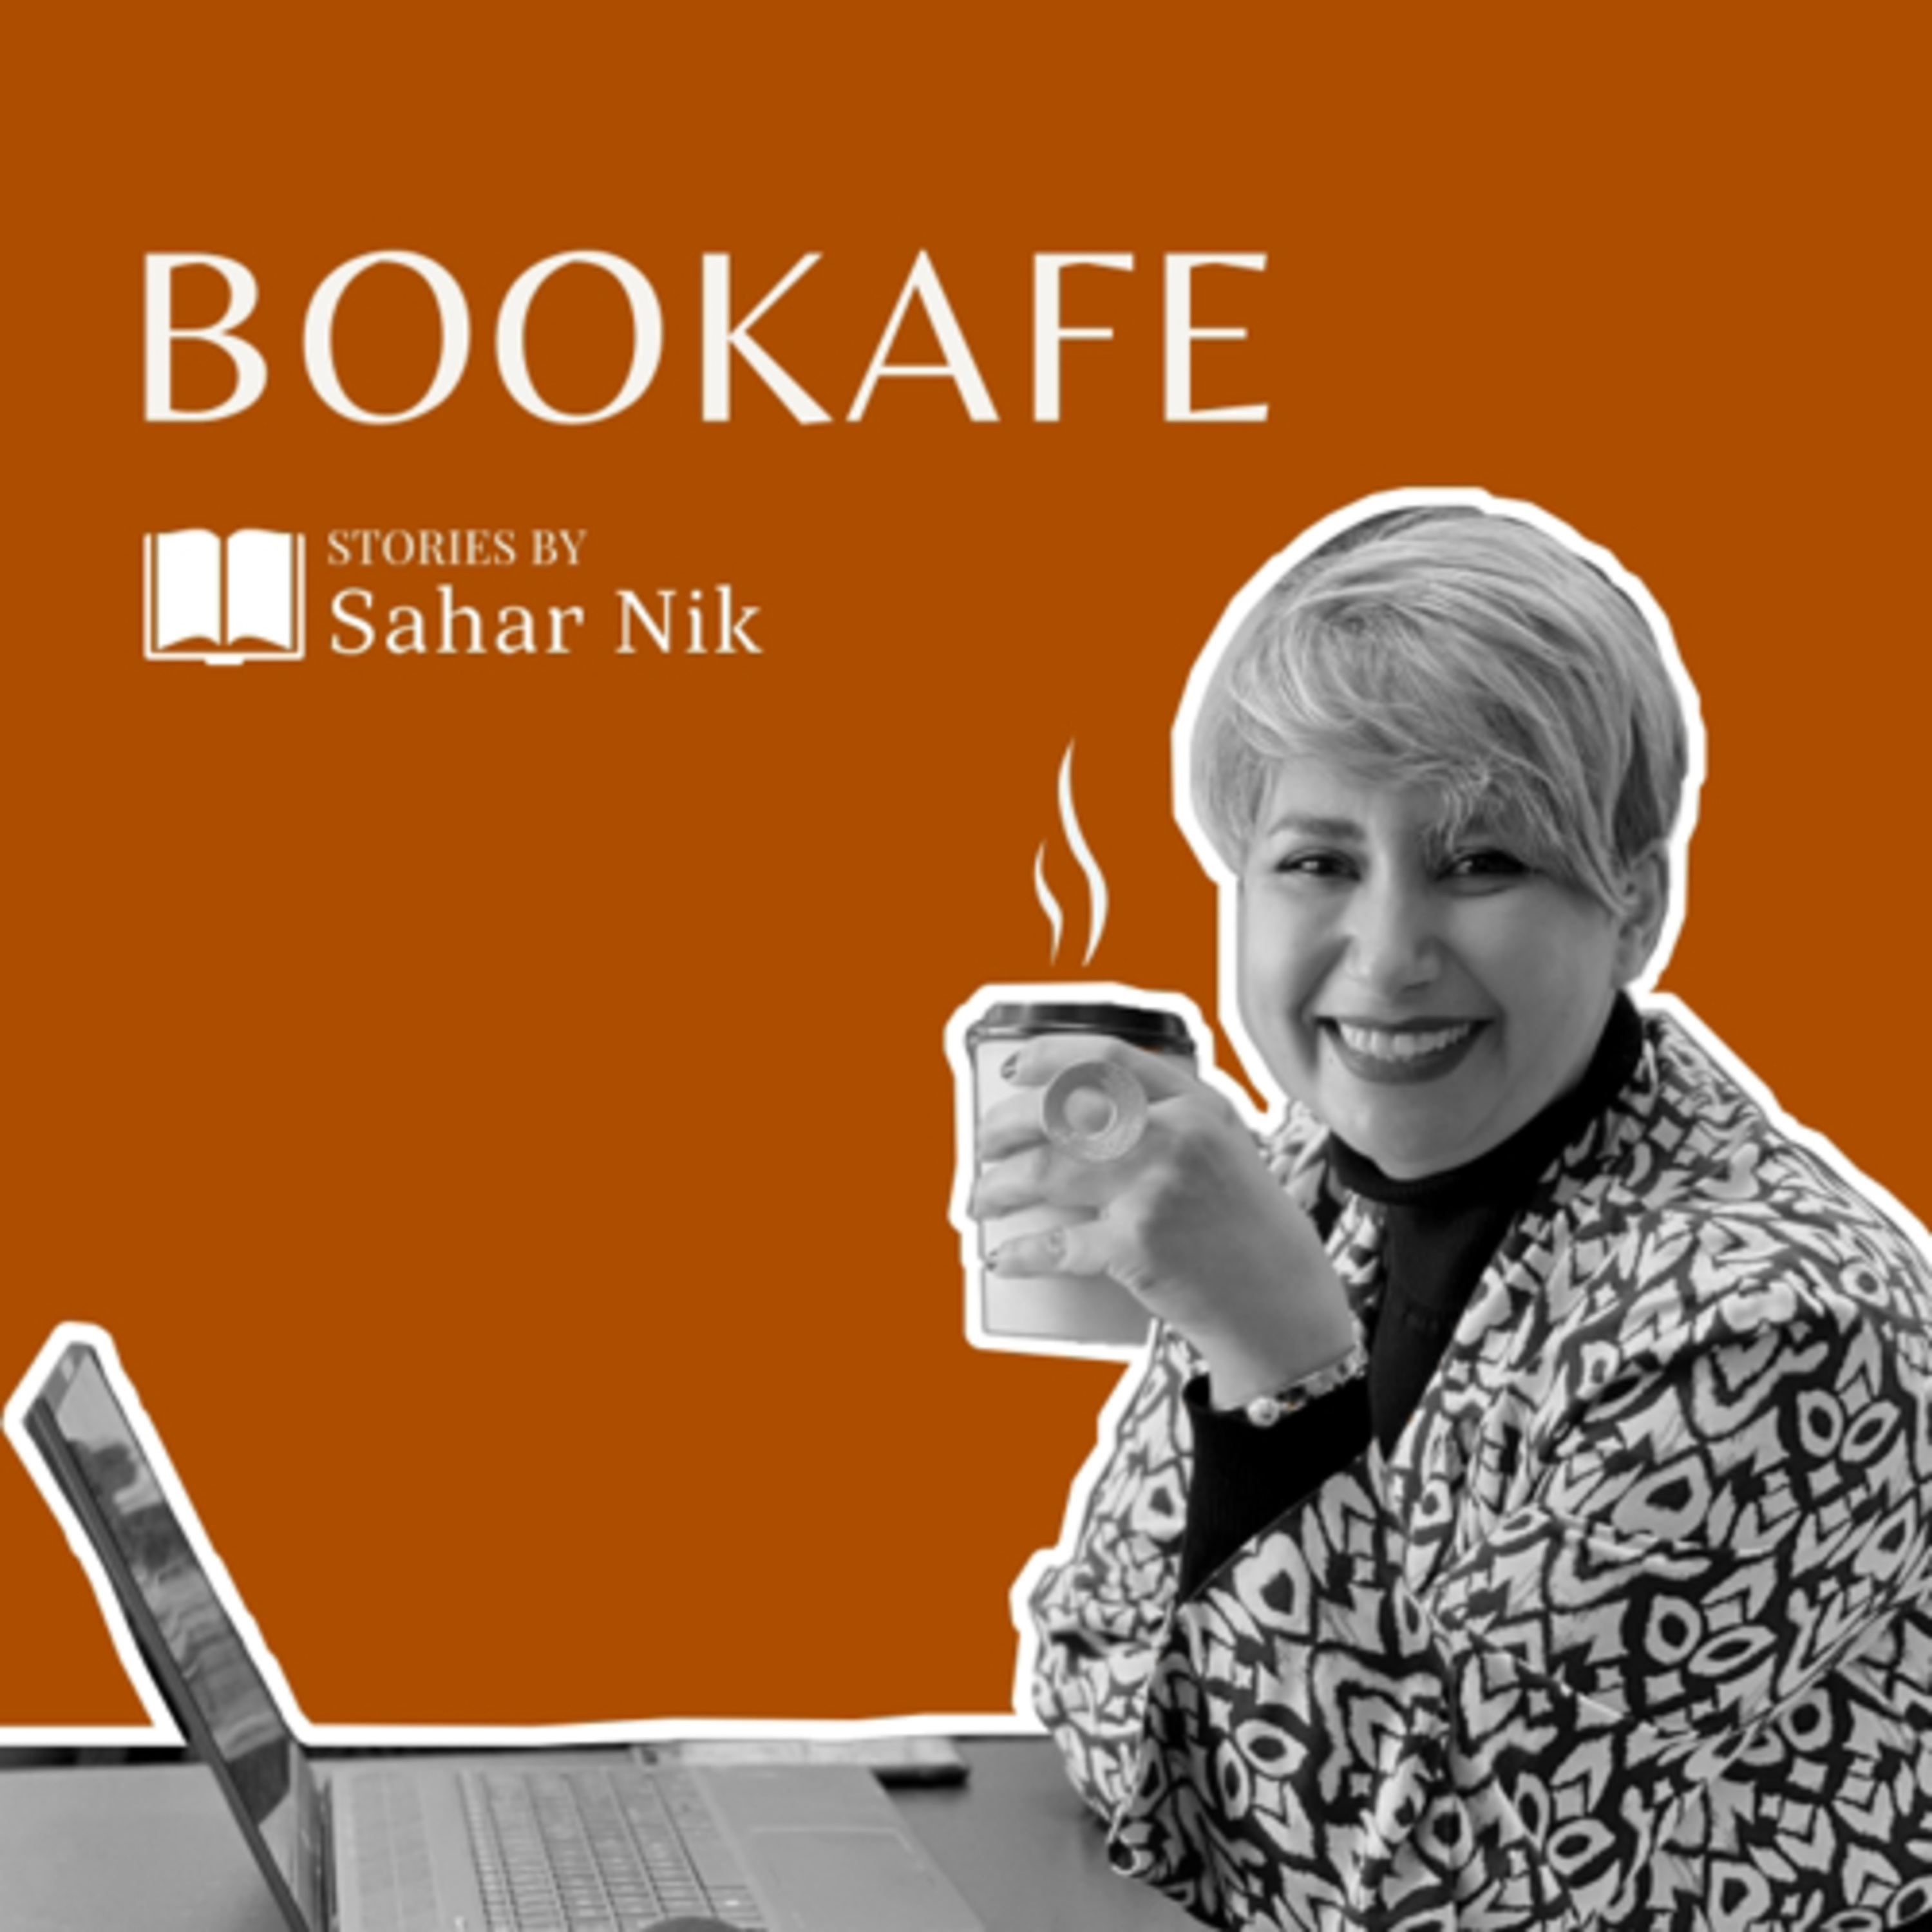 Bookafe بوكافه